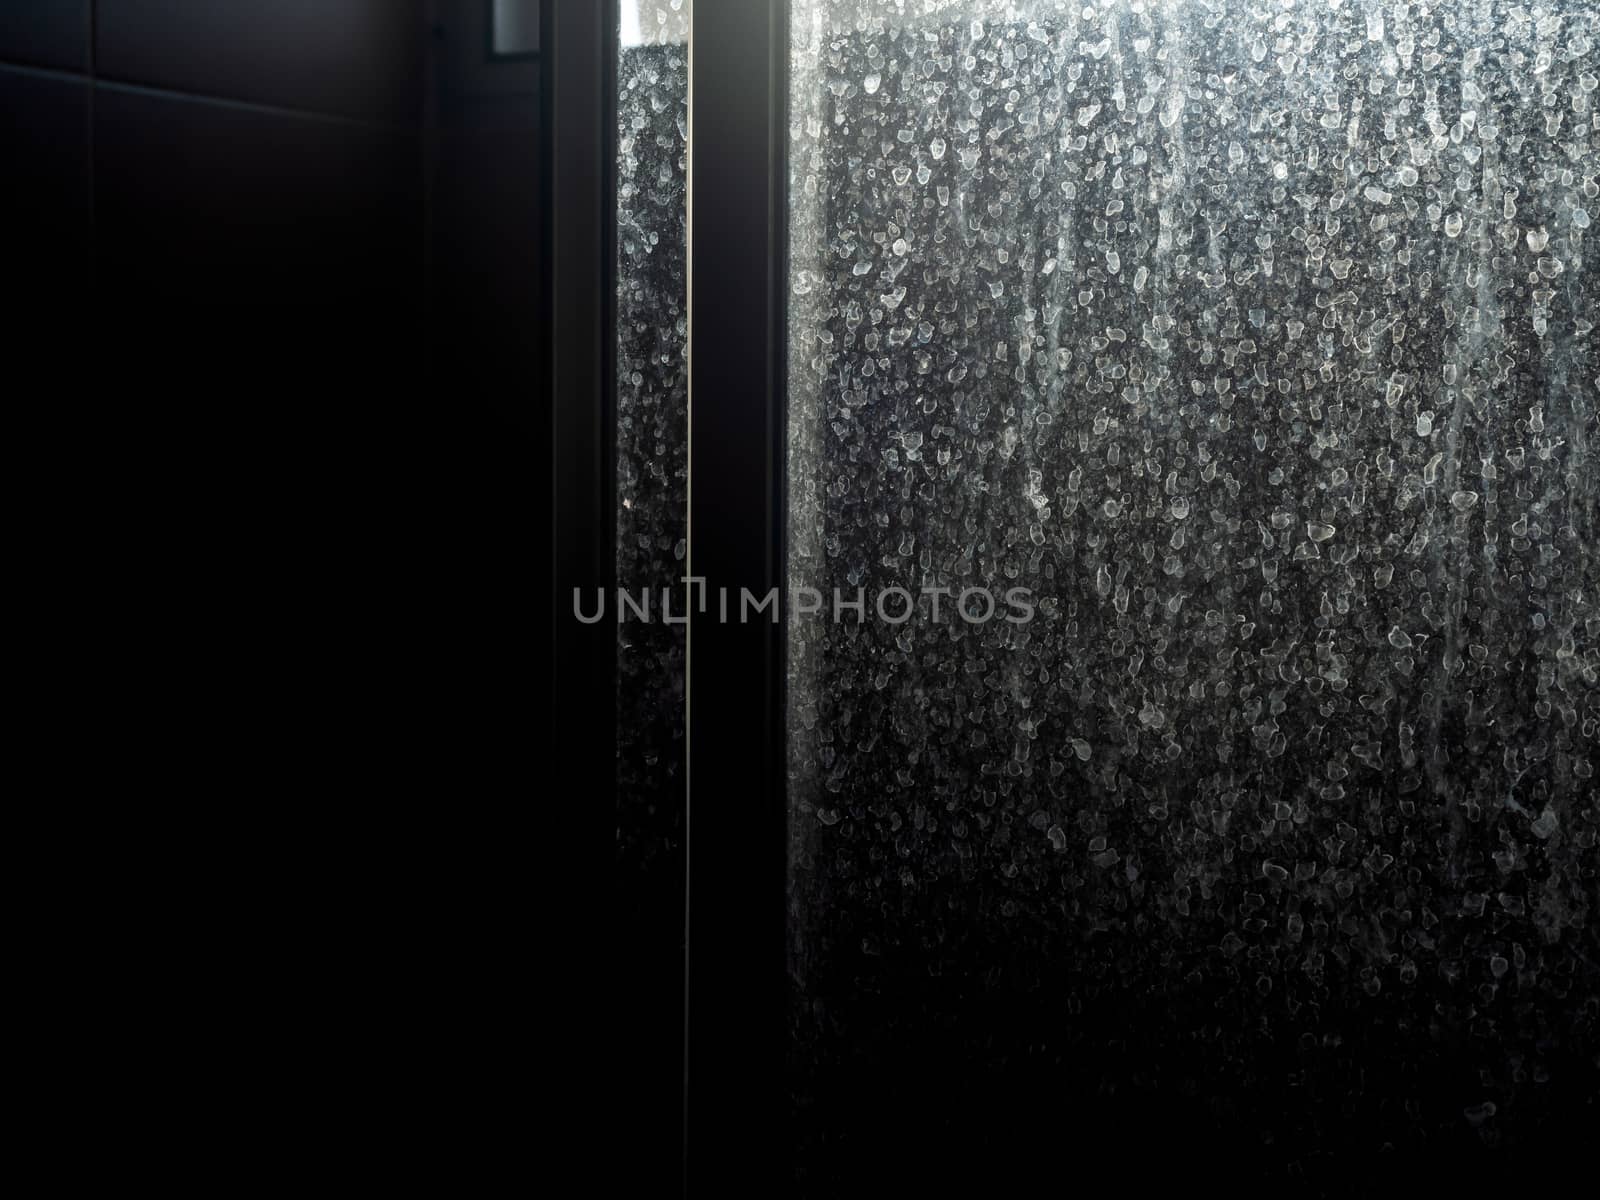 Dusty and dirty glass door. Water stain on sliding door in bathroom, dark background.